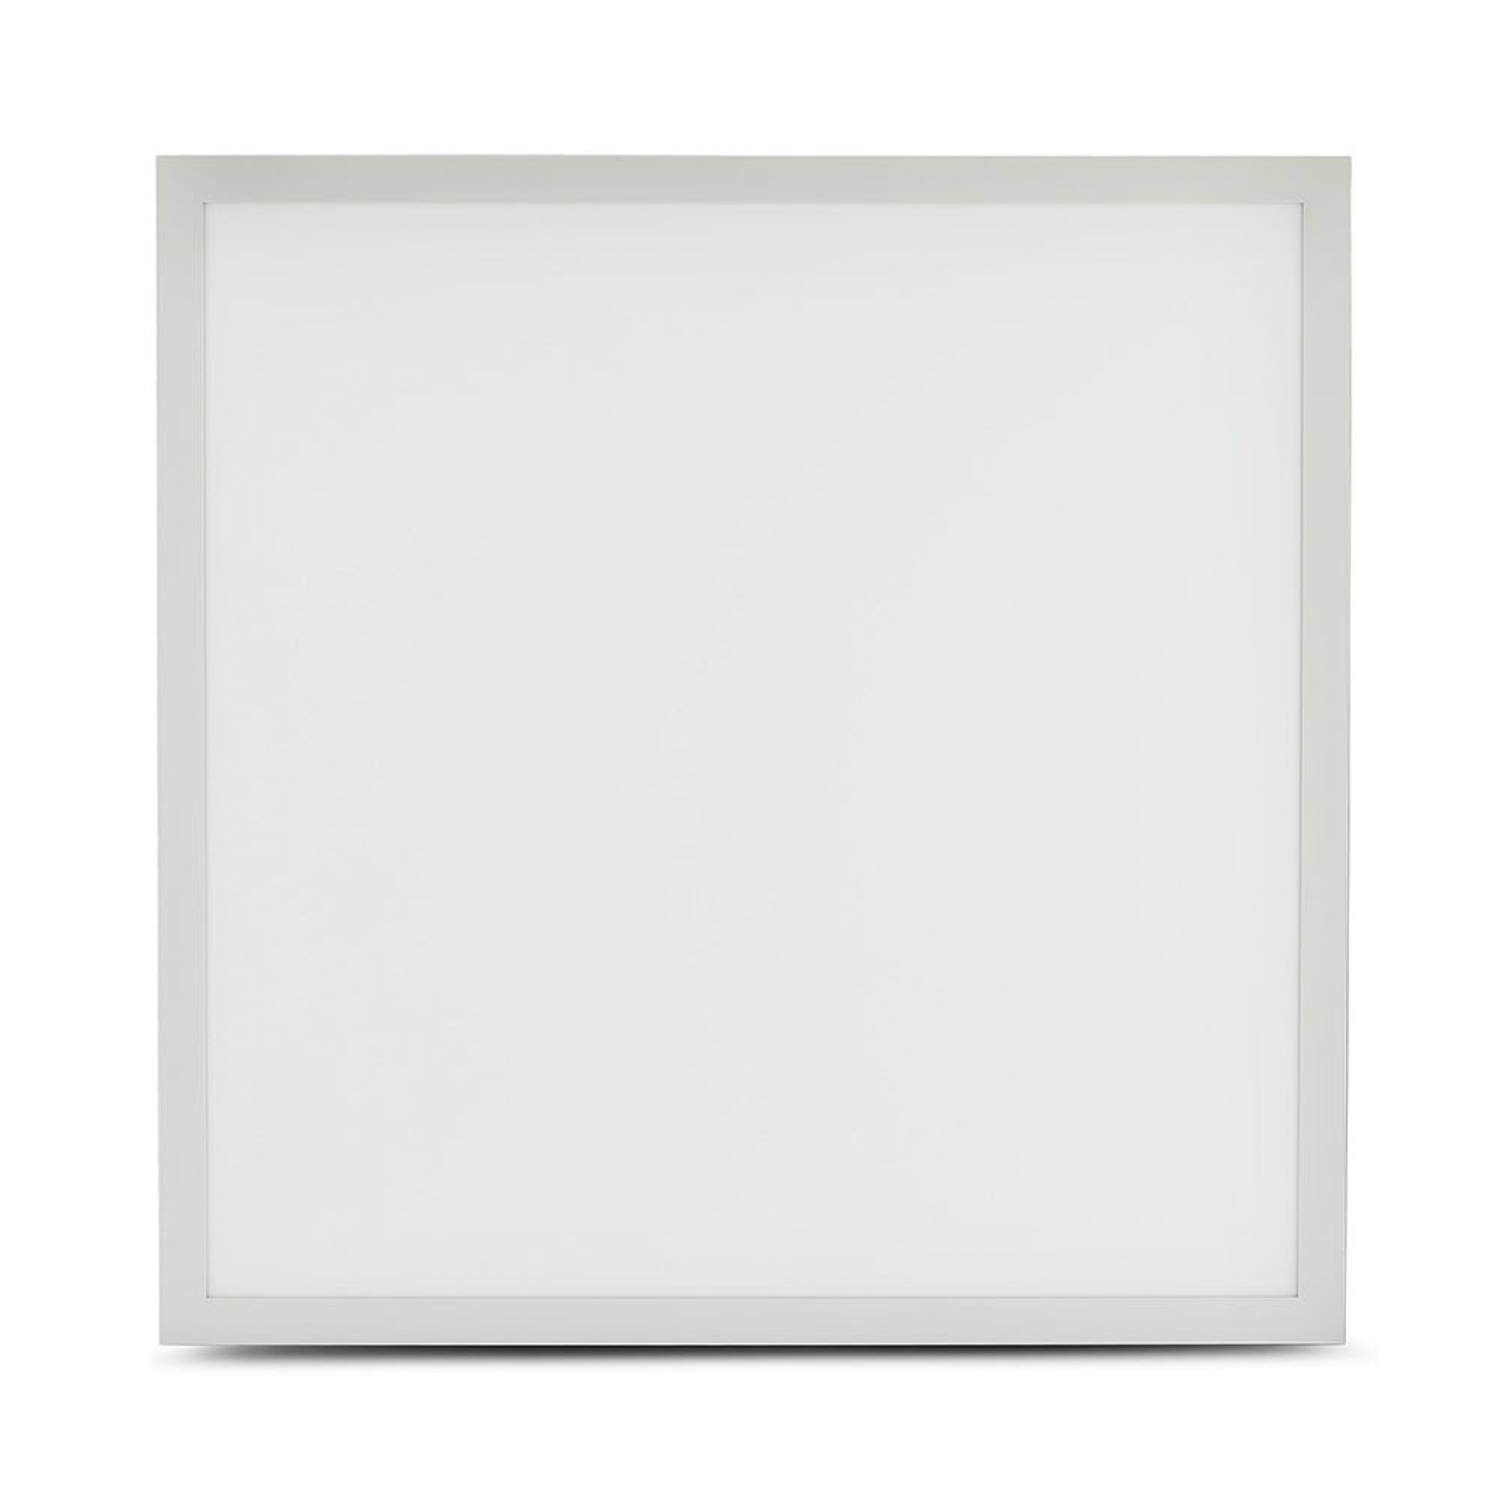 V-TAC VT-5140 Witte Slimme LED Verlichting - Slim LED Paneel - 60x60 - IP20 - 40W - 4800 Lumen - 3IN1